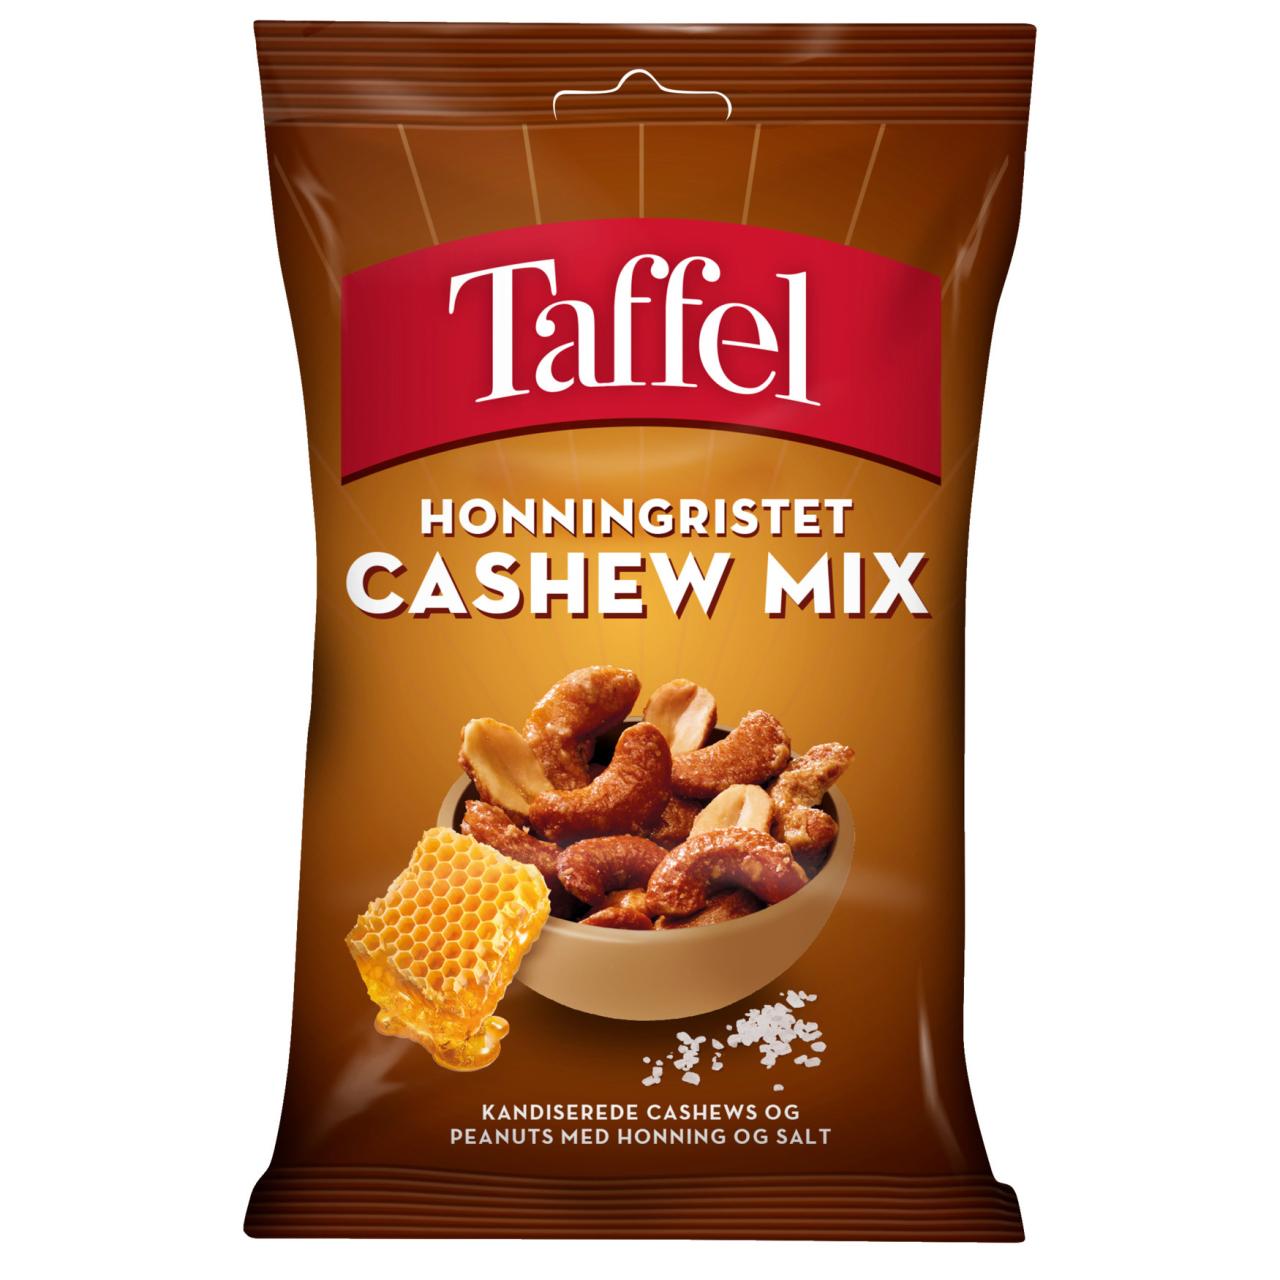 Taffel Honningristet Cashew Mix 180g